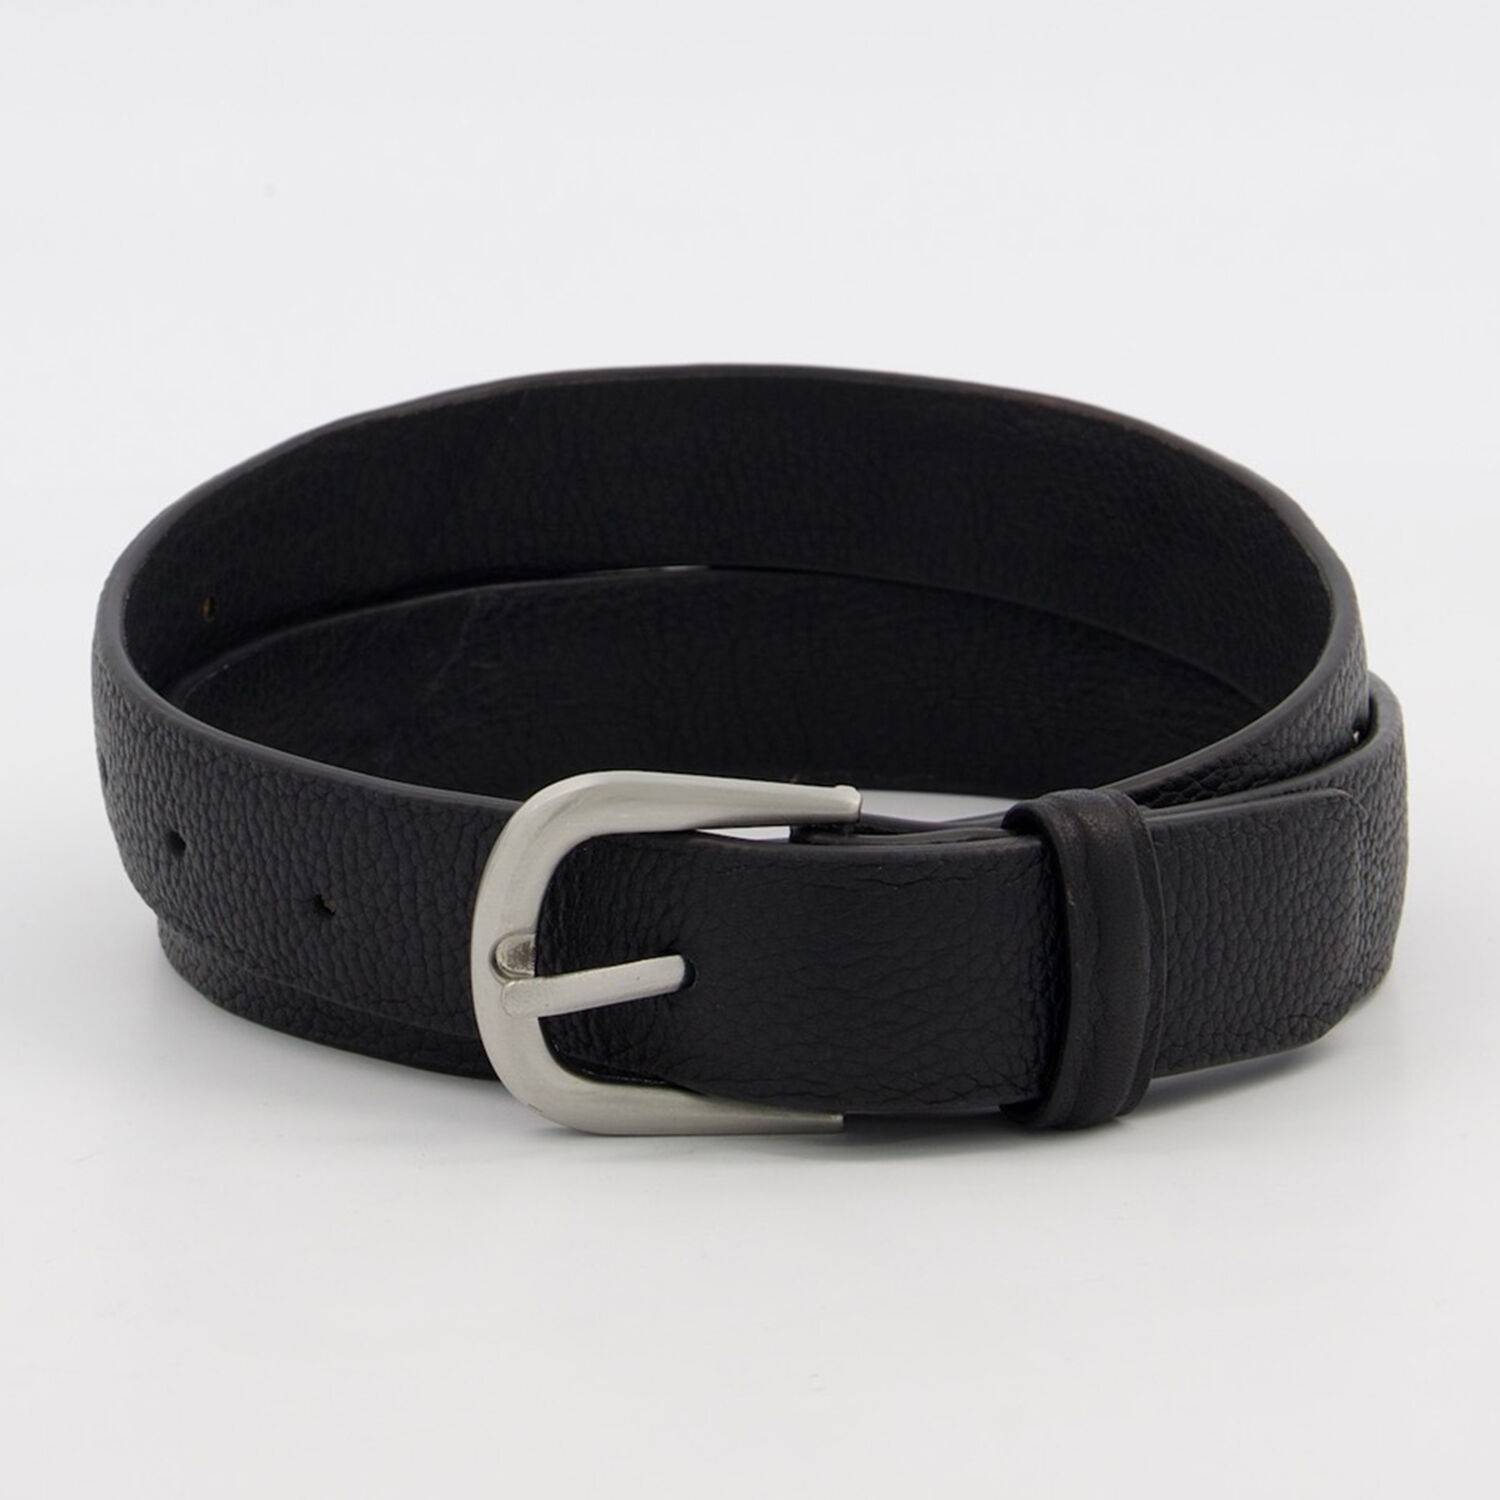 Black Leather Studded Belt - TK Maxx UK